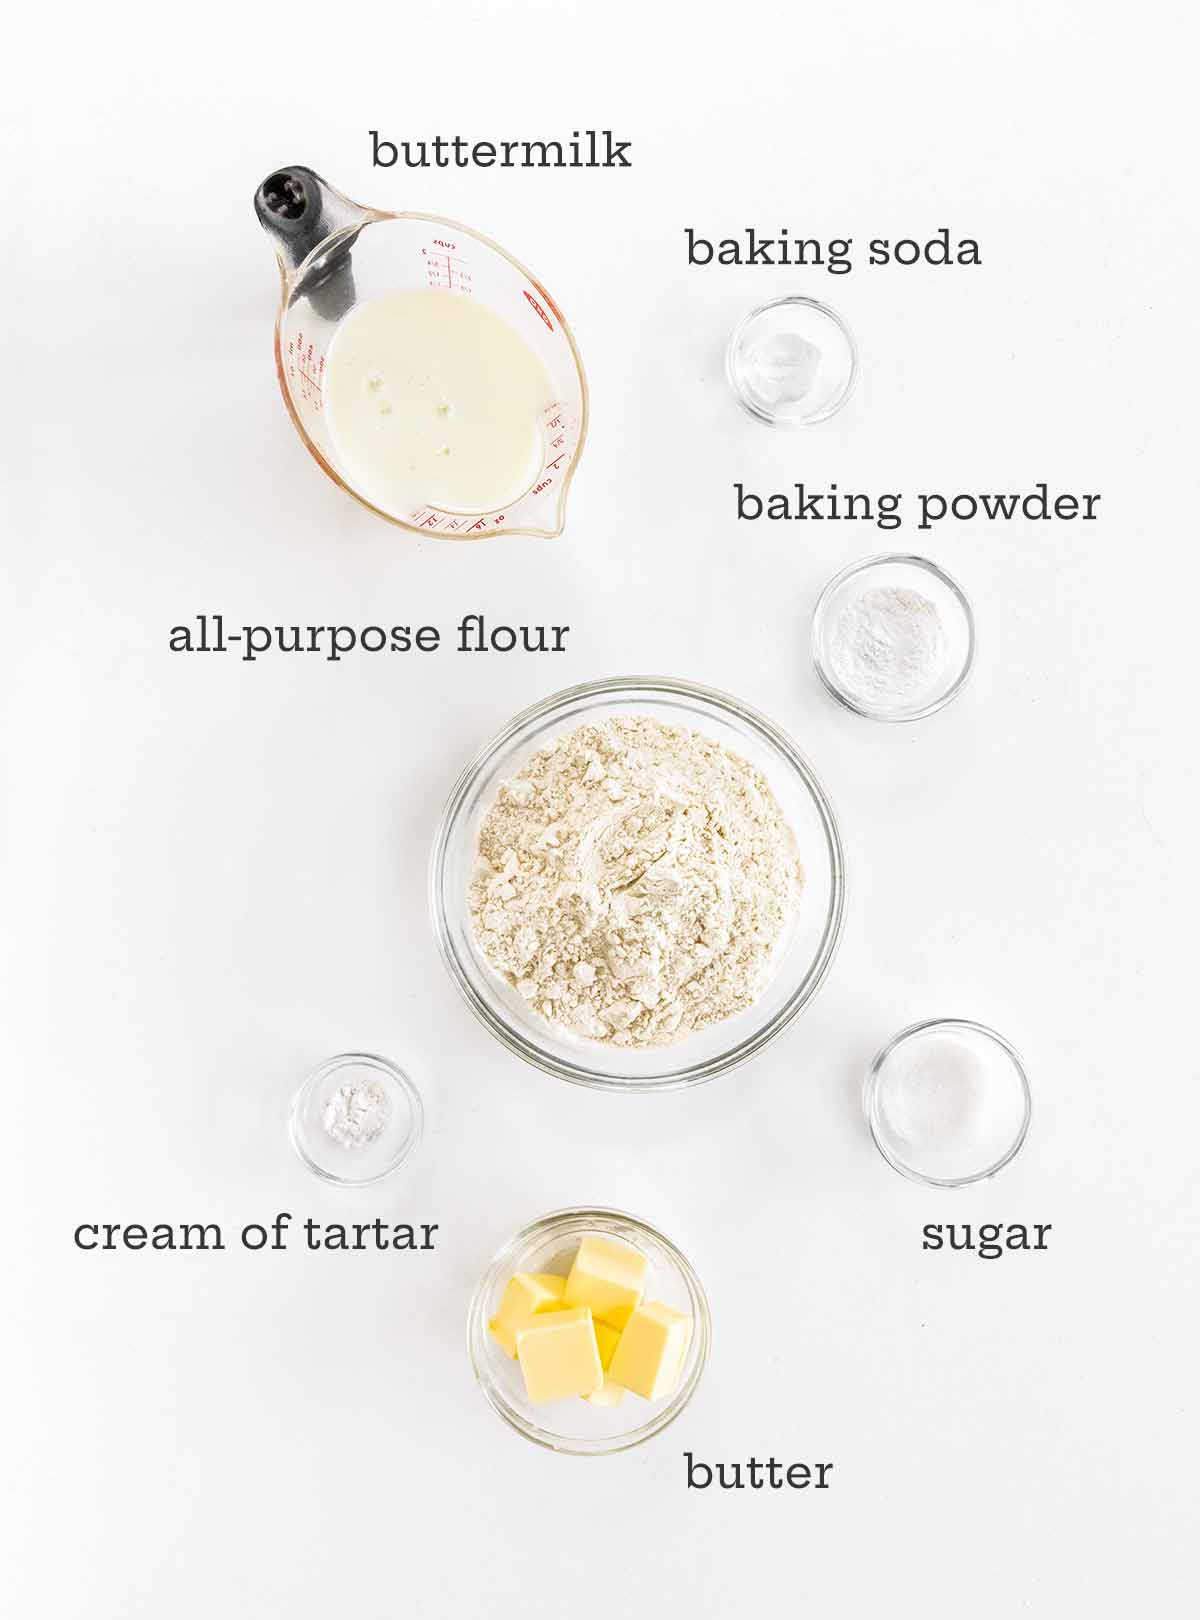 Ingredients for buttermilk drop biscuits -- buttermilk, baking soda, baking powder, flour, sugar, butter, and cream of tartar.